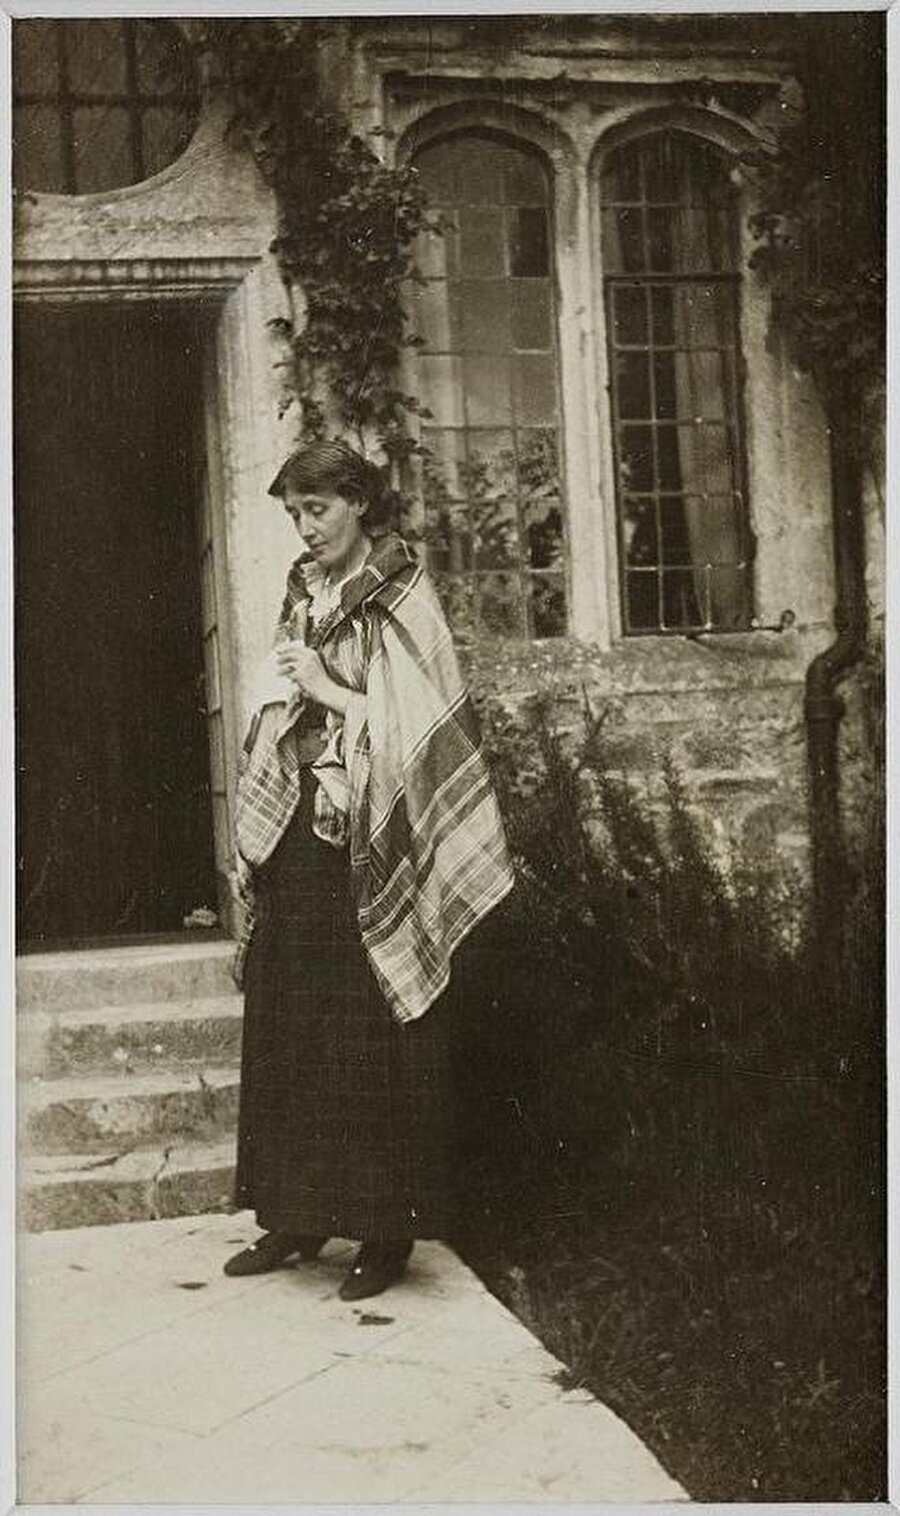 Edebiyat ve hayat üzerinde kadınlar adına verdiği mücadele ve yaşadığı tüm psikolojik travmaların akabinde 1941 yılında intihar ederek kendi canına kıydı. Geride ise 2 intihar mektubu bıraktı: 1'i kardeşi Vanessa Bell'e, diğeri ise kocası Leonard Woolf'a.

                                    
                                